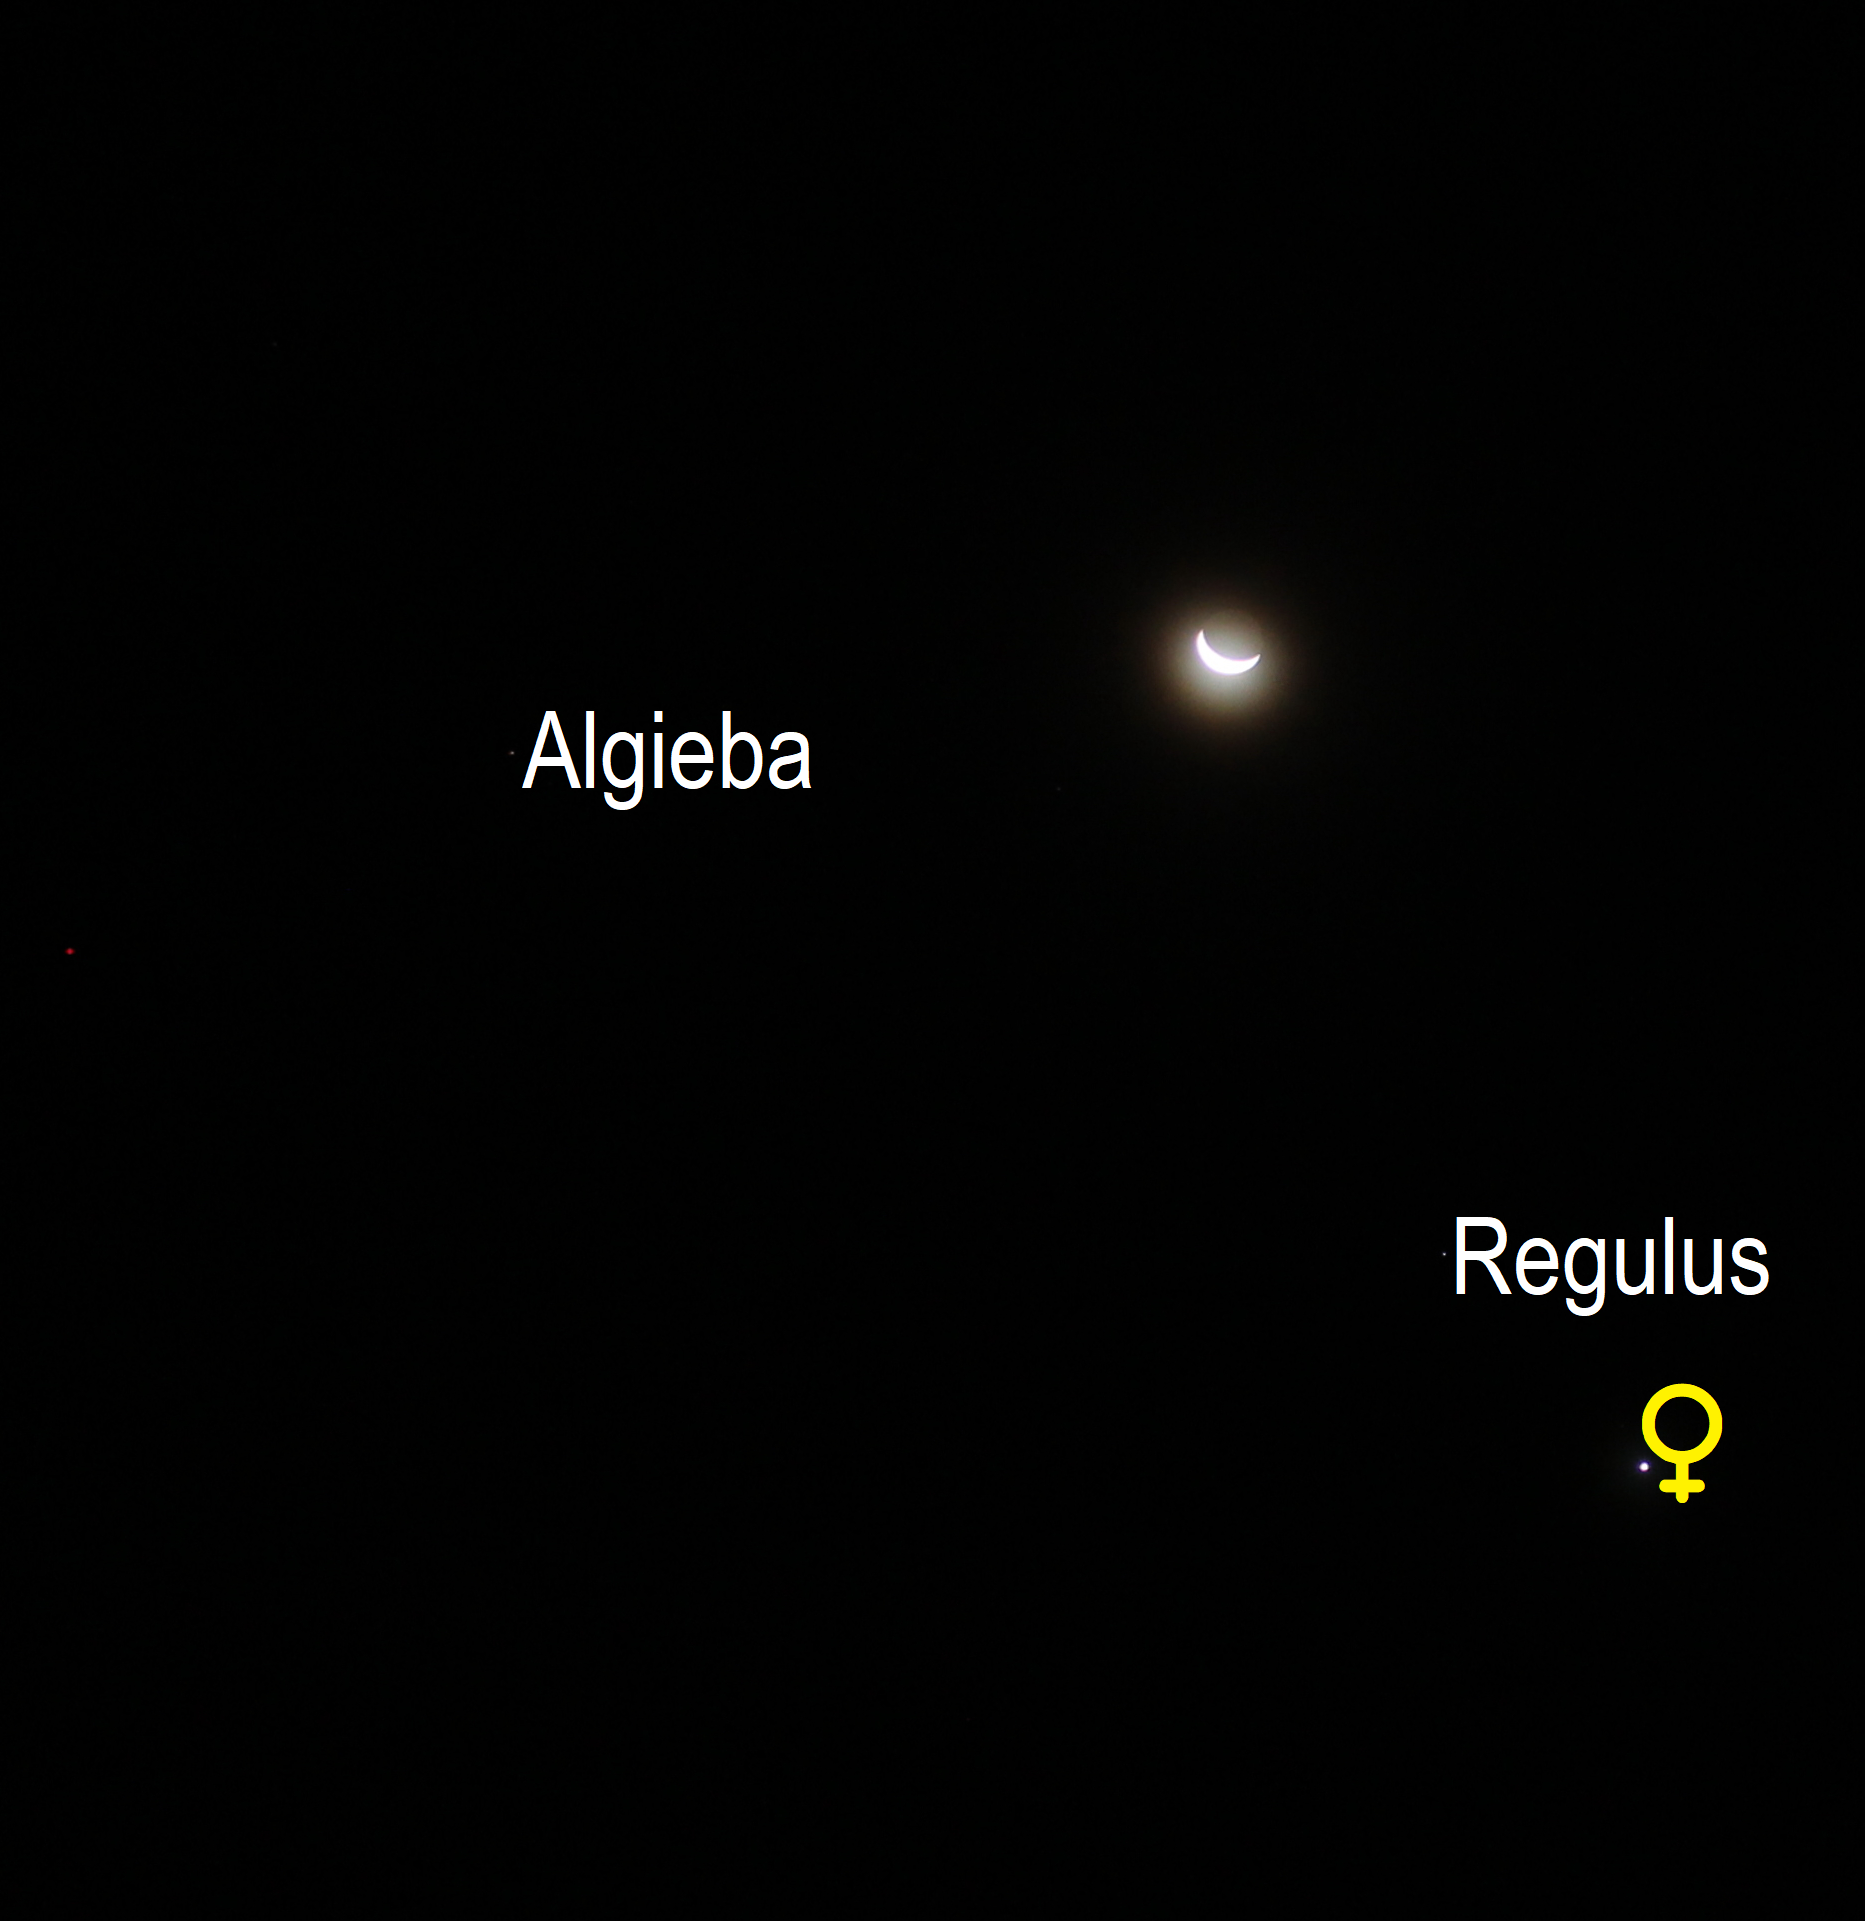 Mond, Venus und Regulus am Morgenhimmel (Objekte beschriftet)